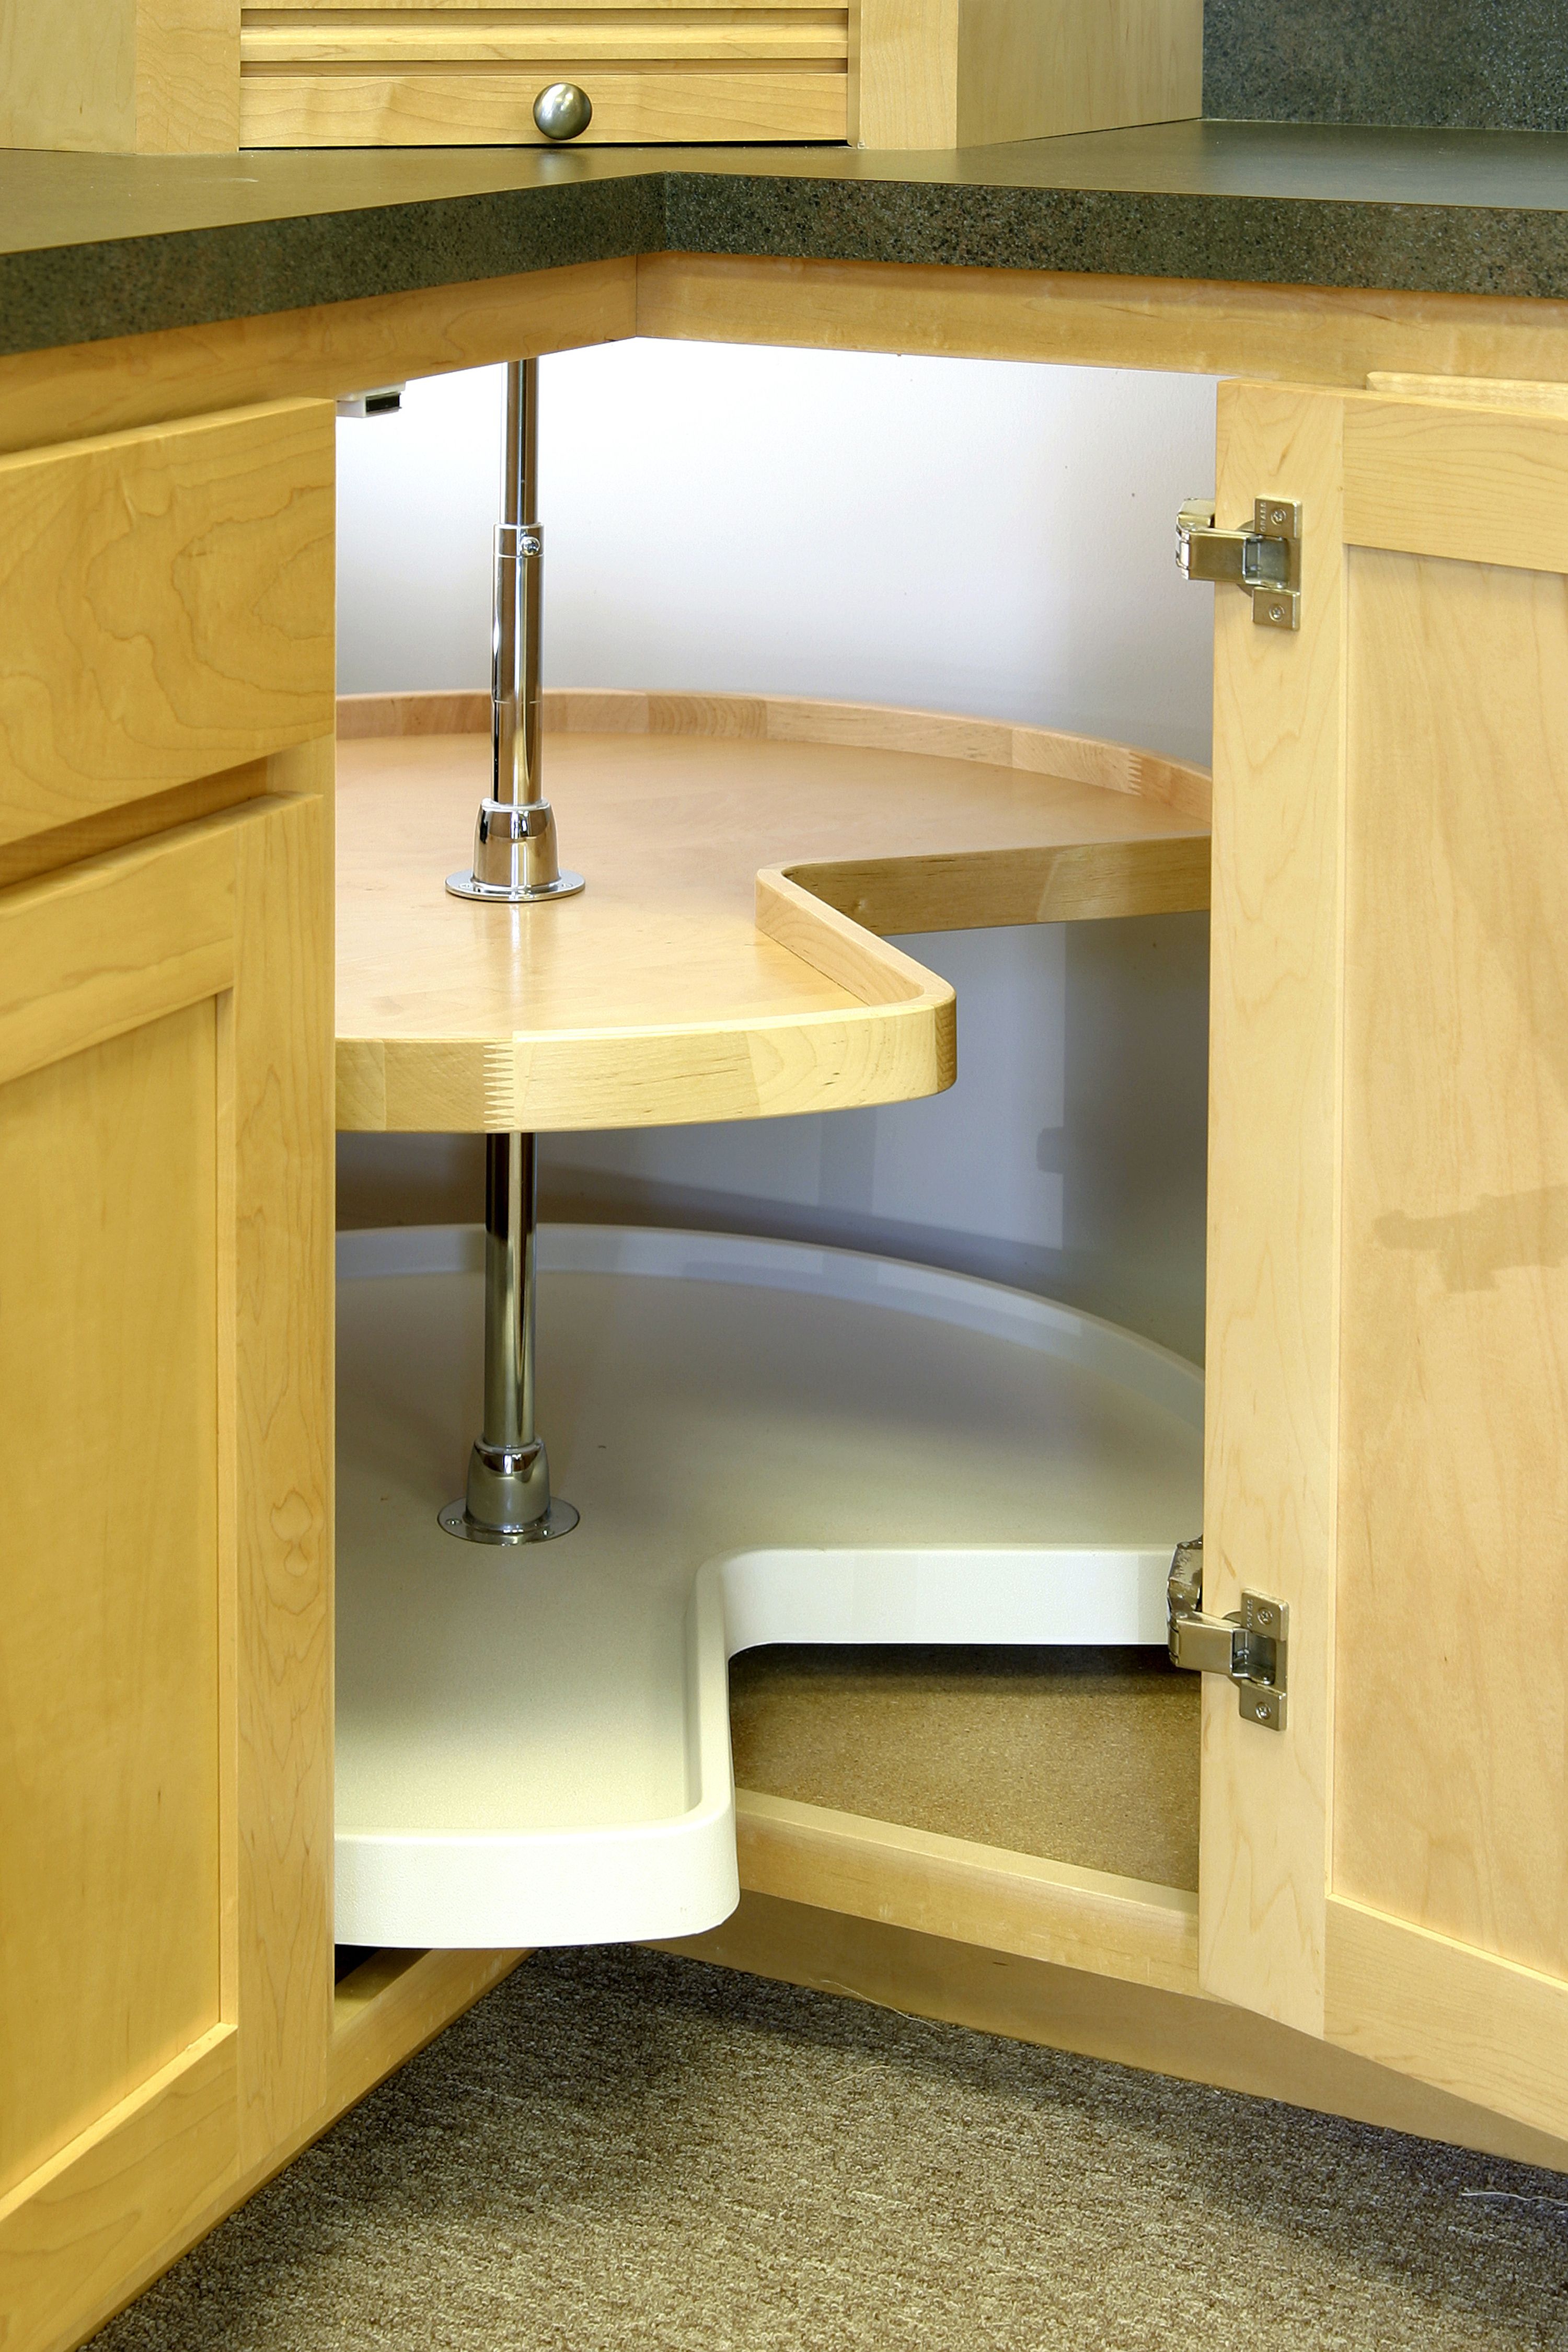 Corner Kitchen Cabinet Storage Ideas Corner Kitchen Cabinet